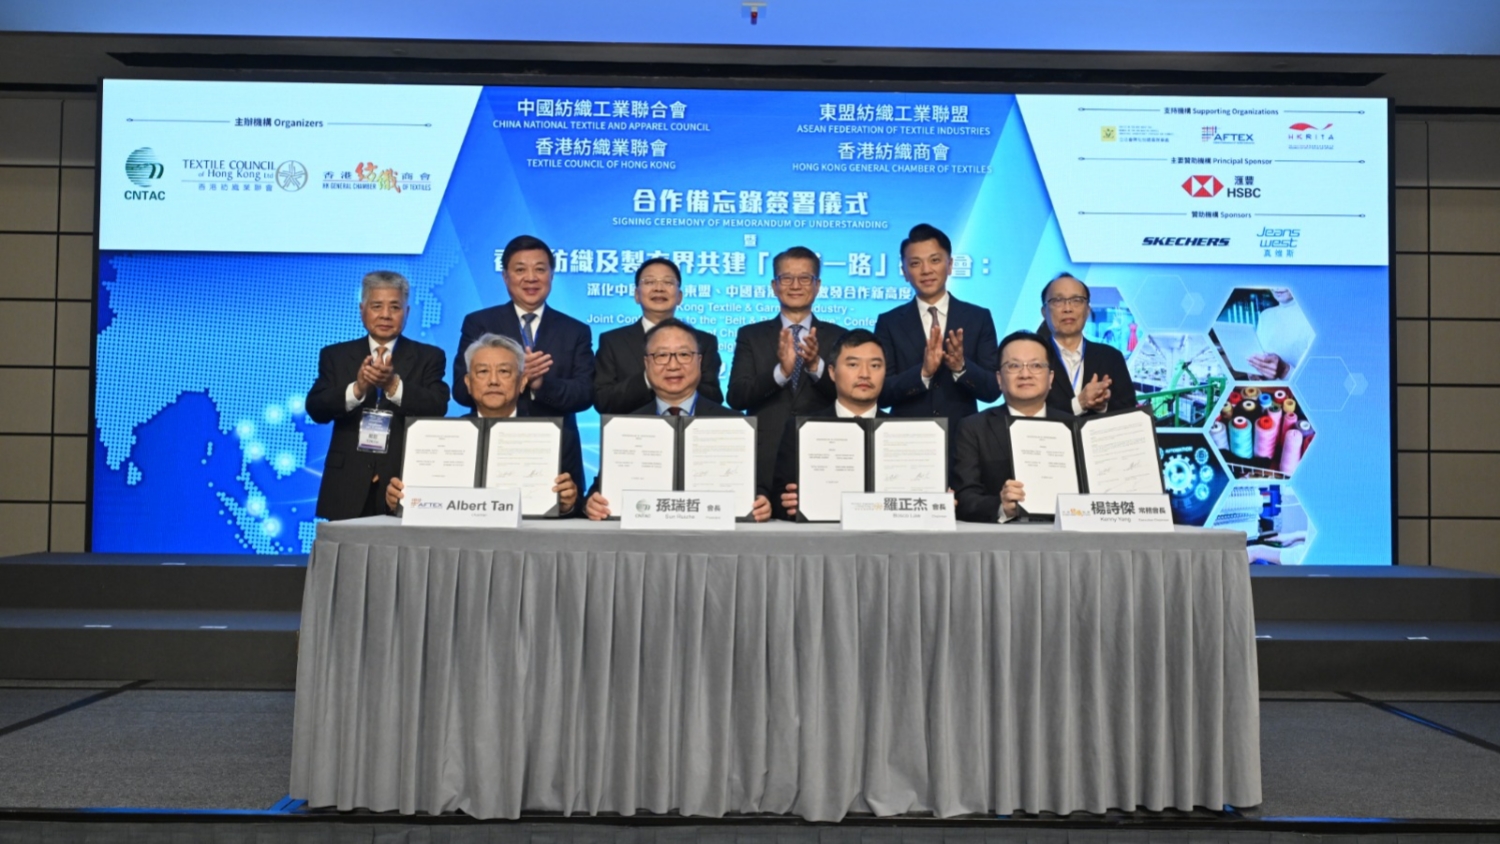 東盟內地香港紡織業簽署合作備忘錄 促三地市場科研對接深化互利合作